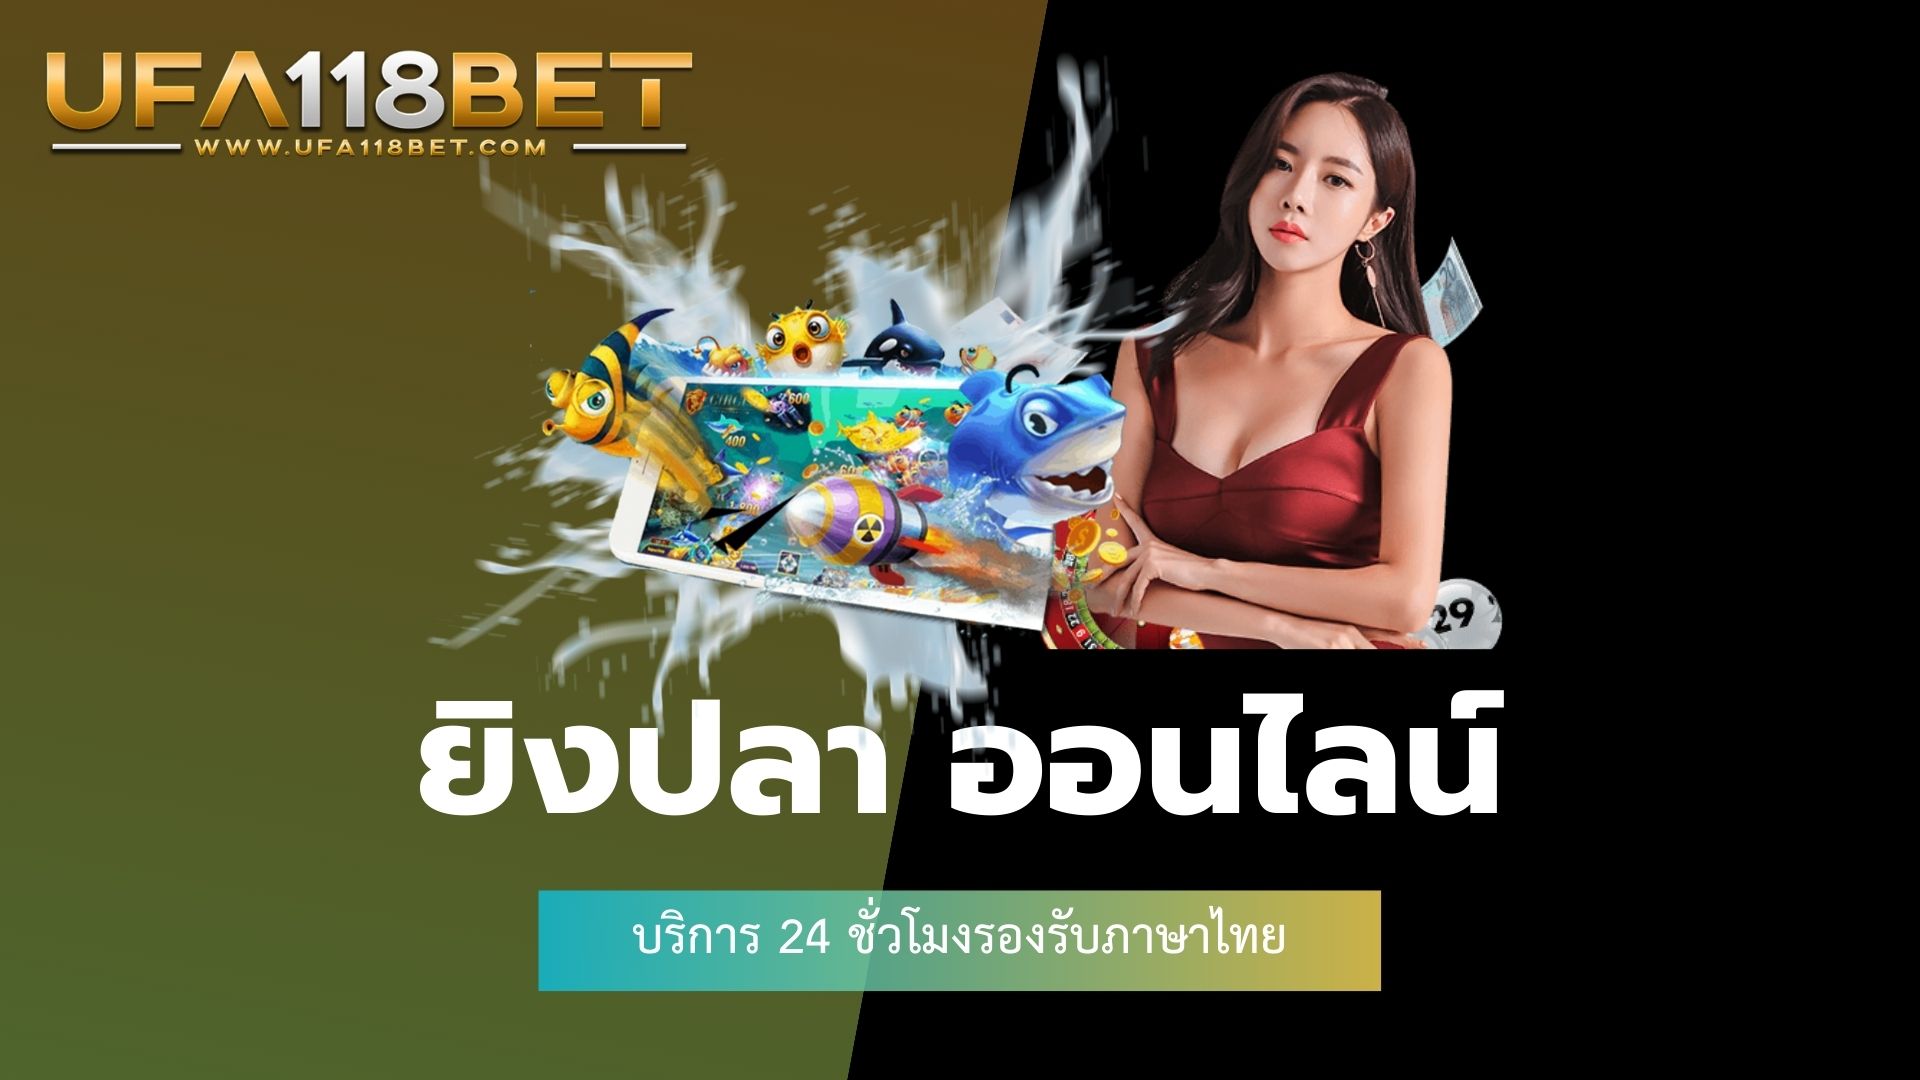 ยิงปลา ออนไลน์ บริการ 24 ชั่วโมงรองรับภาษาไทย